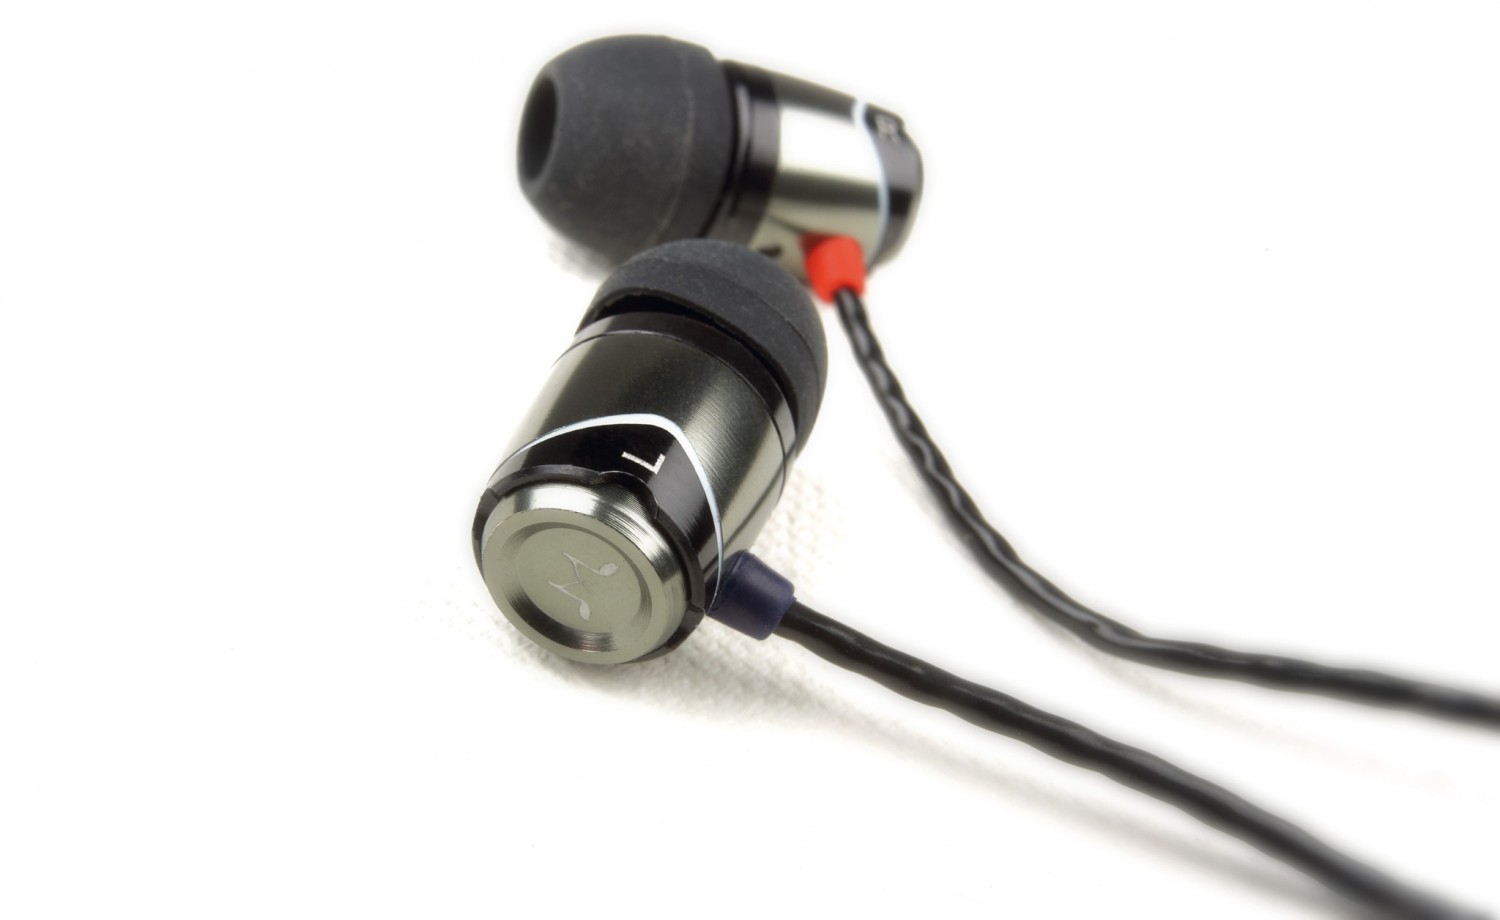 Kopfhörer InEar SoundMAGIC E10S im Test, Bild 1